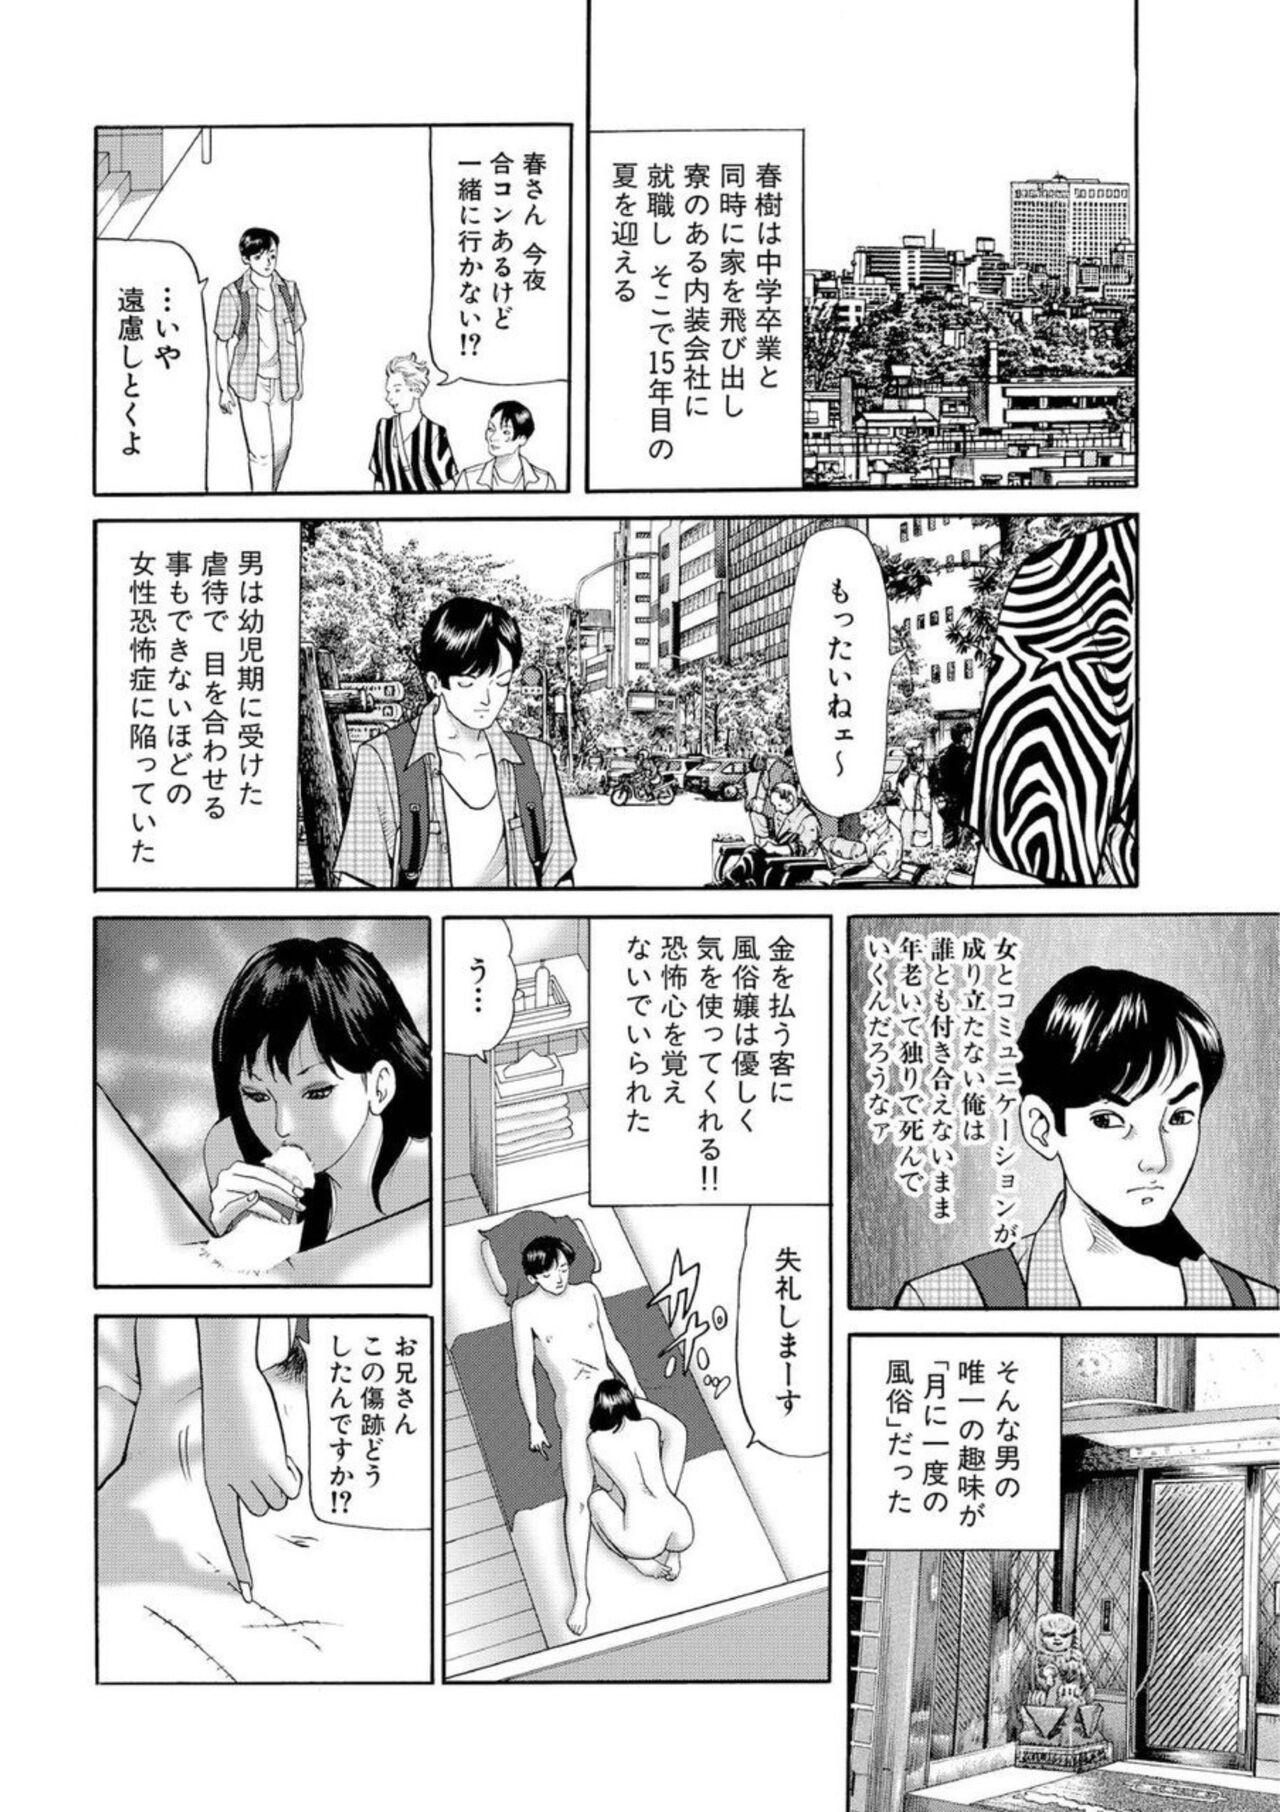 Boy Nyobon Jitsuroku Rape Saiban 1 Cheating - Page 7